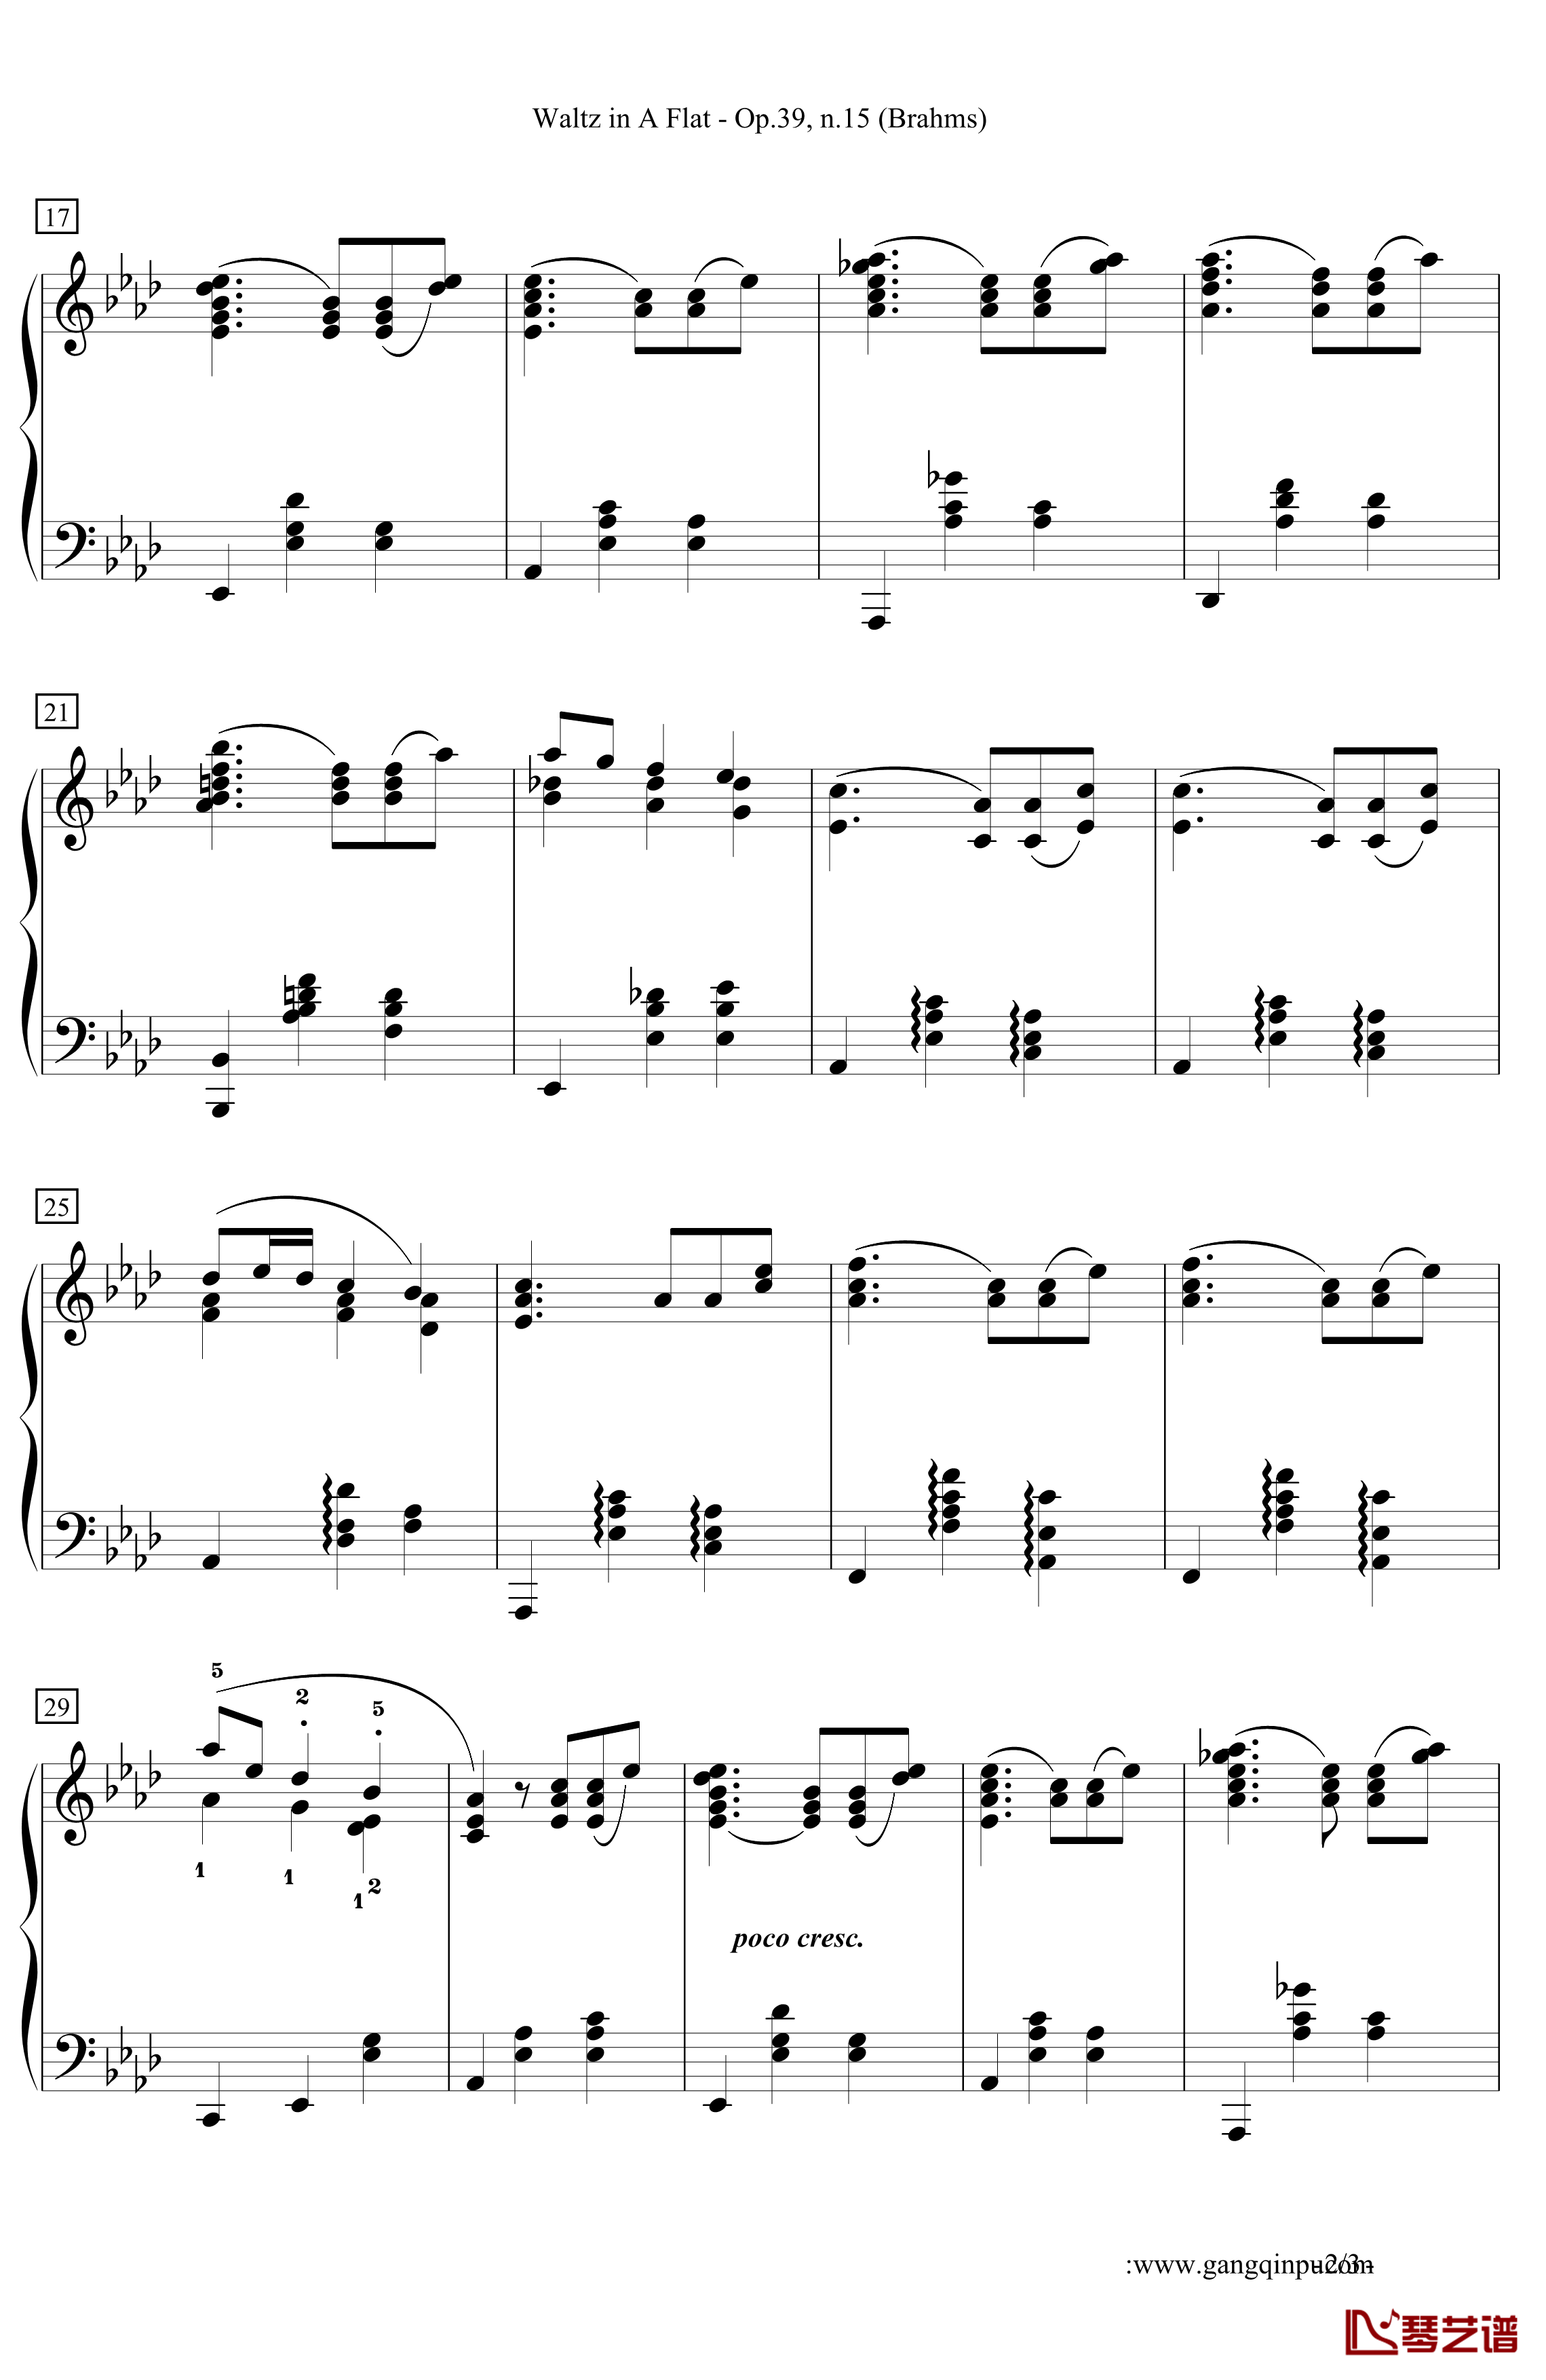 Waltz in A Flat 钢琴谱-降A大调圆舞曲-勃拉姆斯-Brahms2